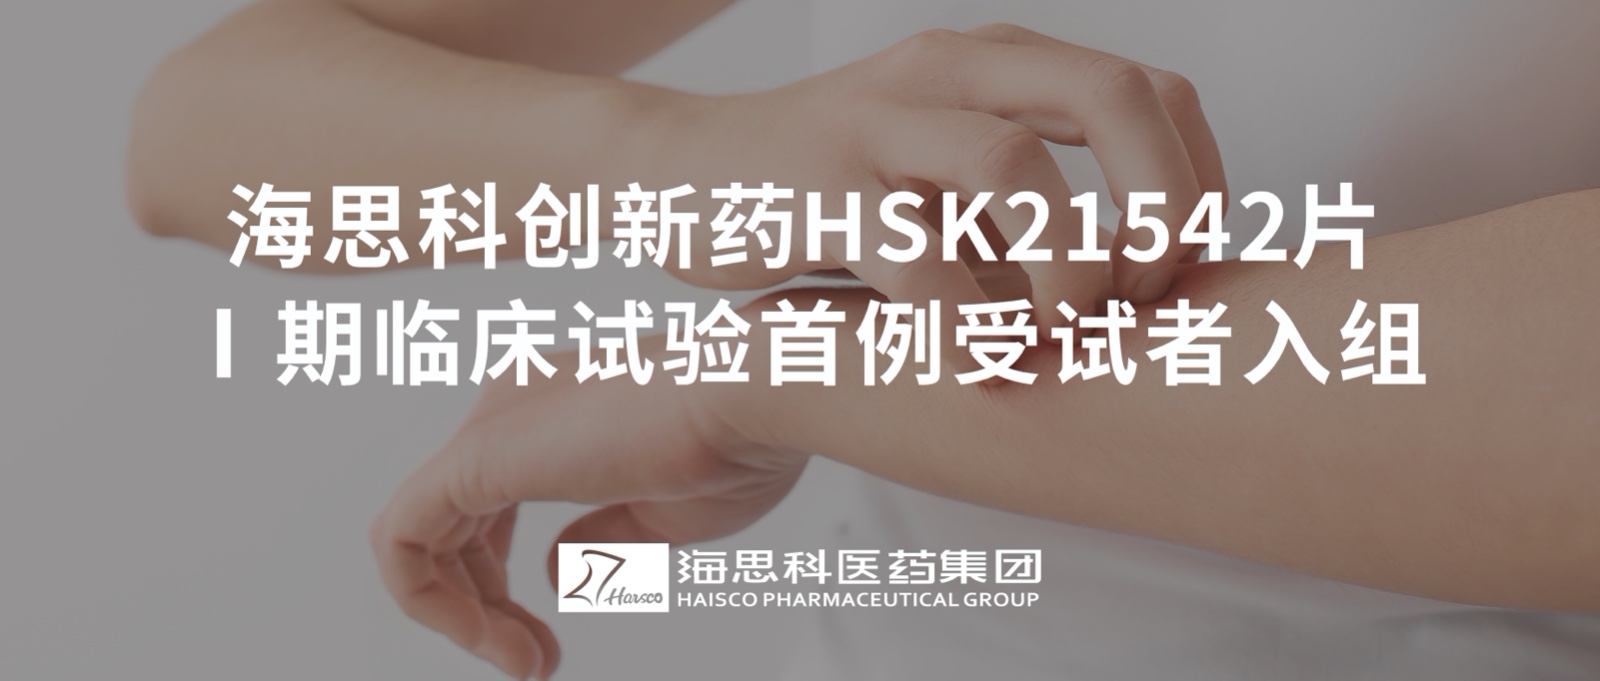 新葡的京集团8814创新药HSK21542片Ⅰ期临床试验首例受试者入组